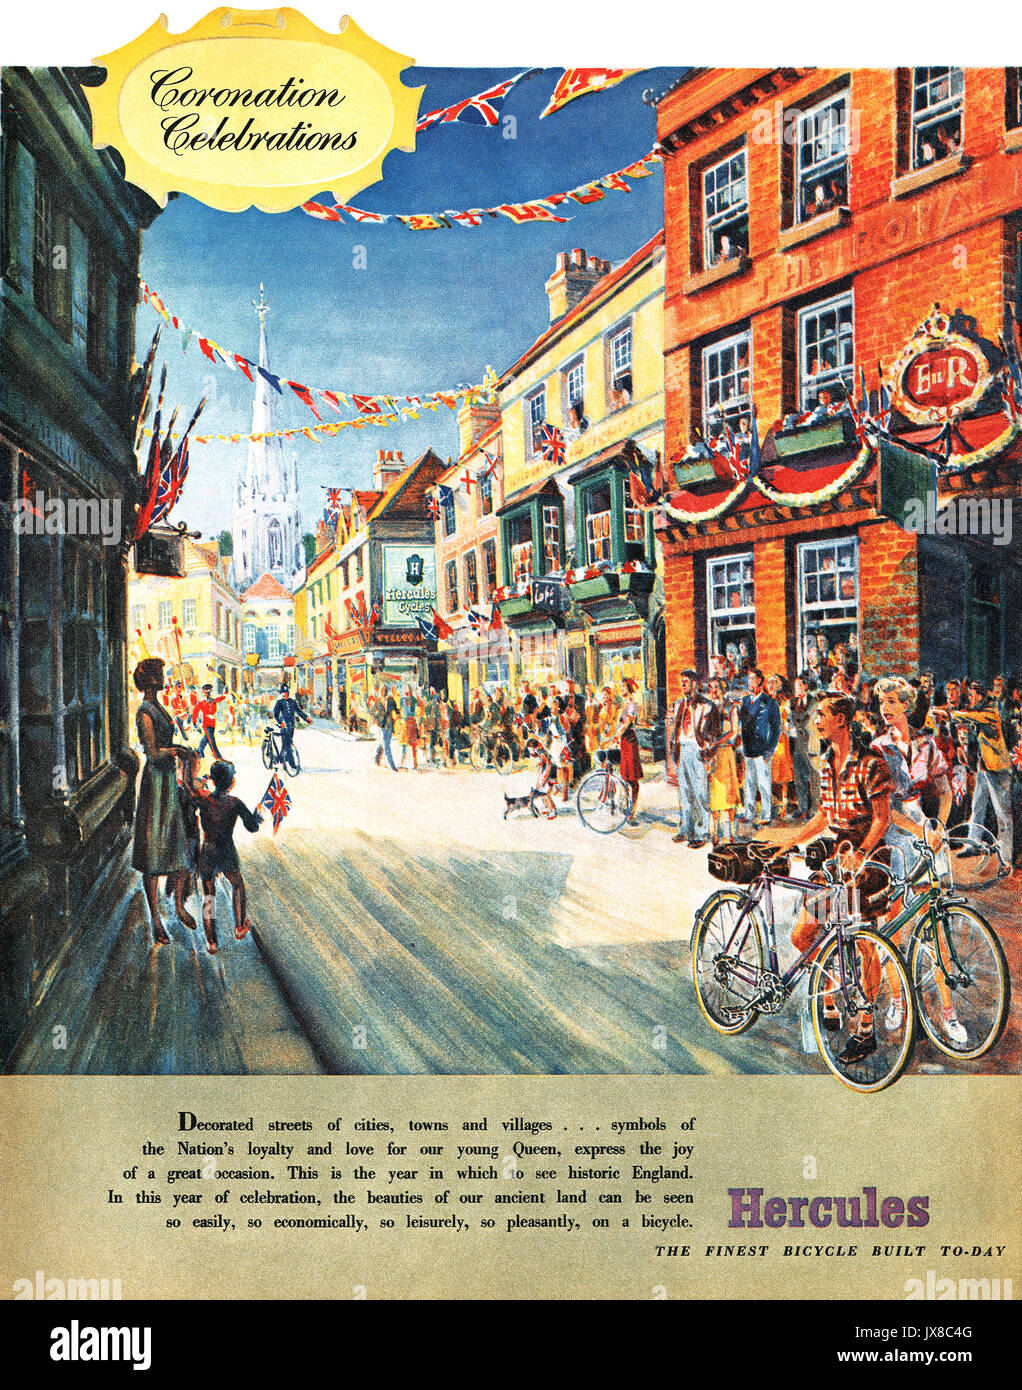 1952 British pubblicità per Hercules biciclette, celebrare la prossima incoronazione di Elisabetta II nel 1953. Foto Stock